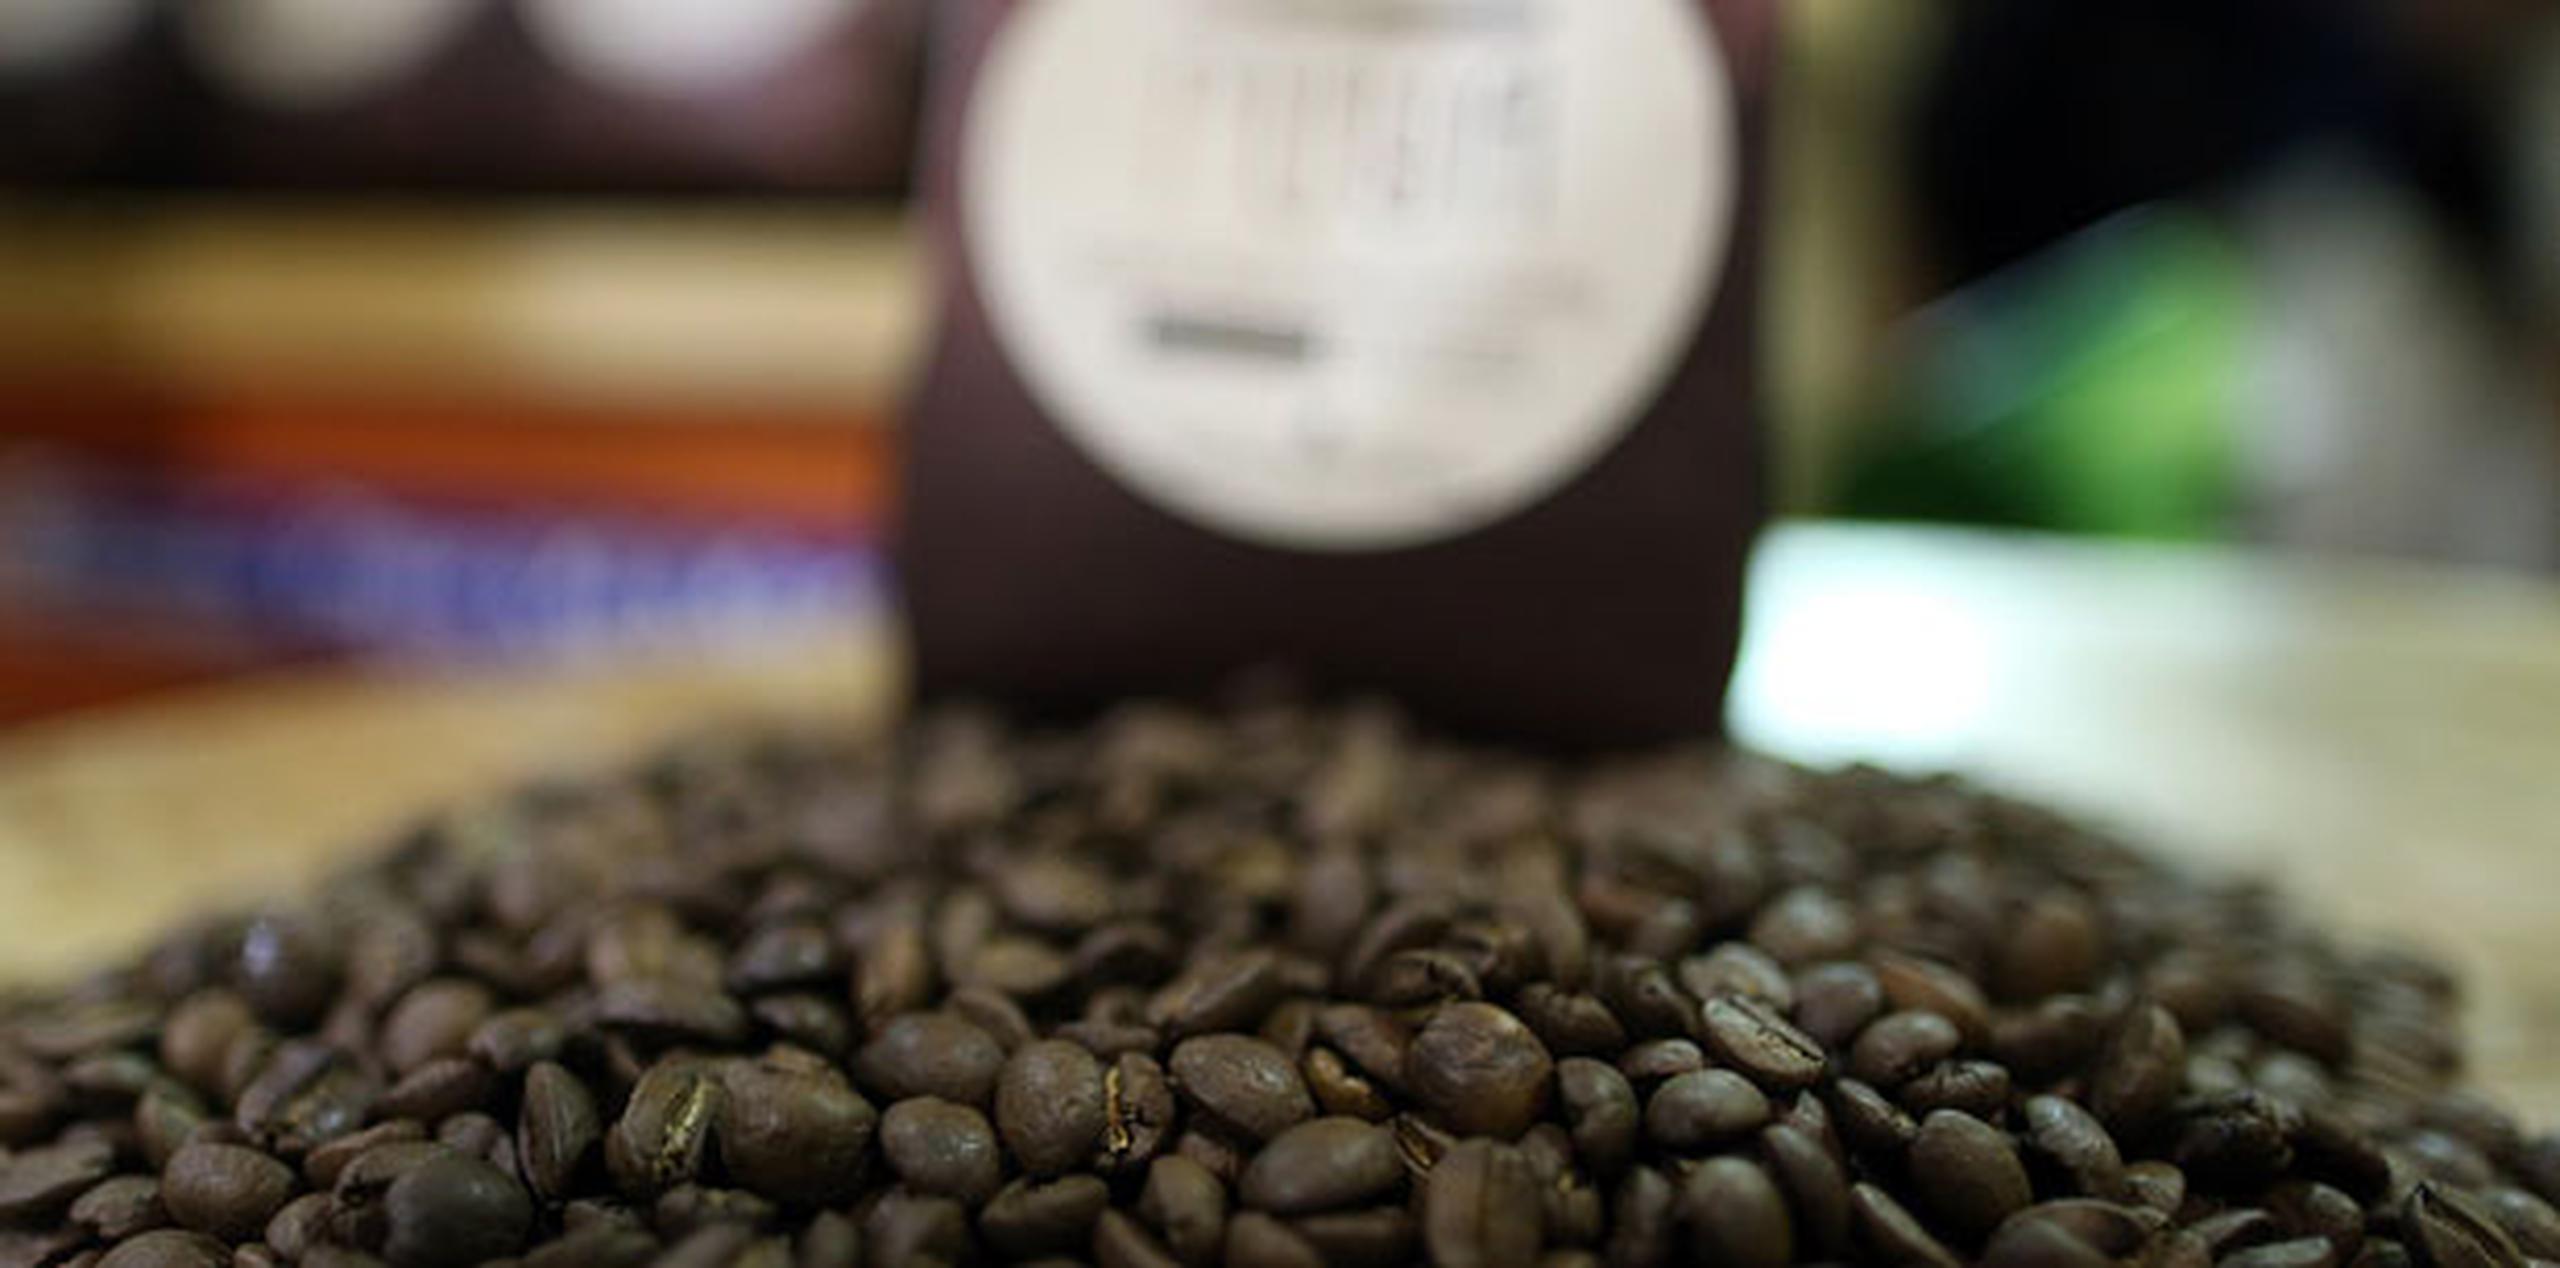 Los retos que enfrentan los productores de café son los relacionados con la naturaleza, ya sean las sequías o exceso de lluvia, y las plagas. (jose.reyes@gfrmedia.com)